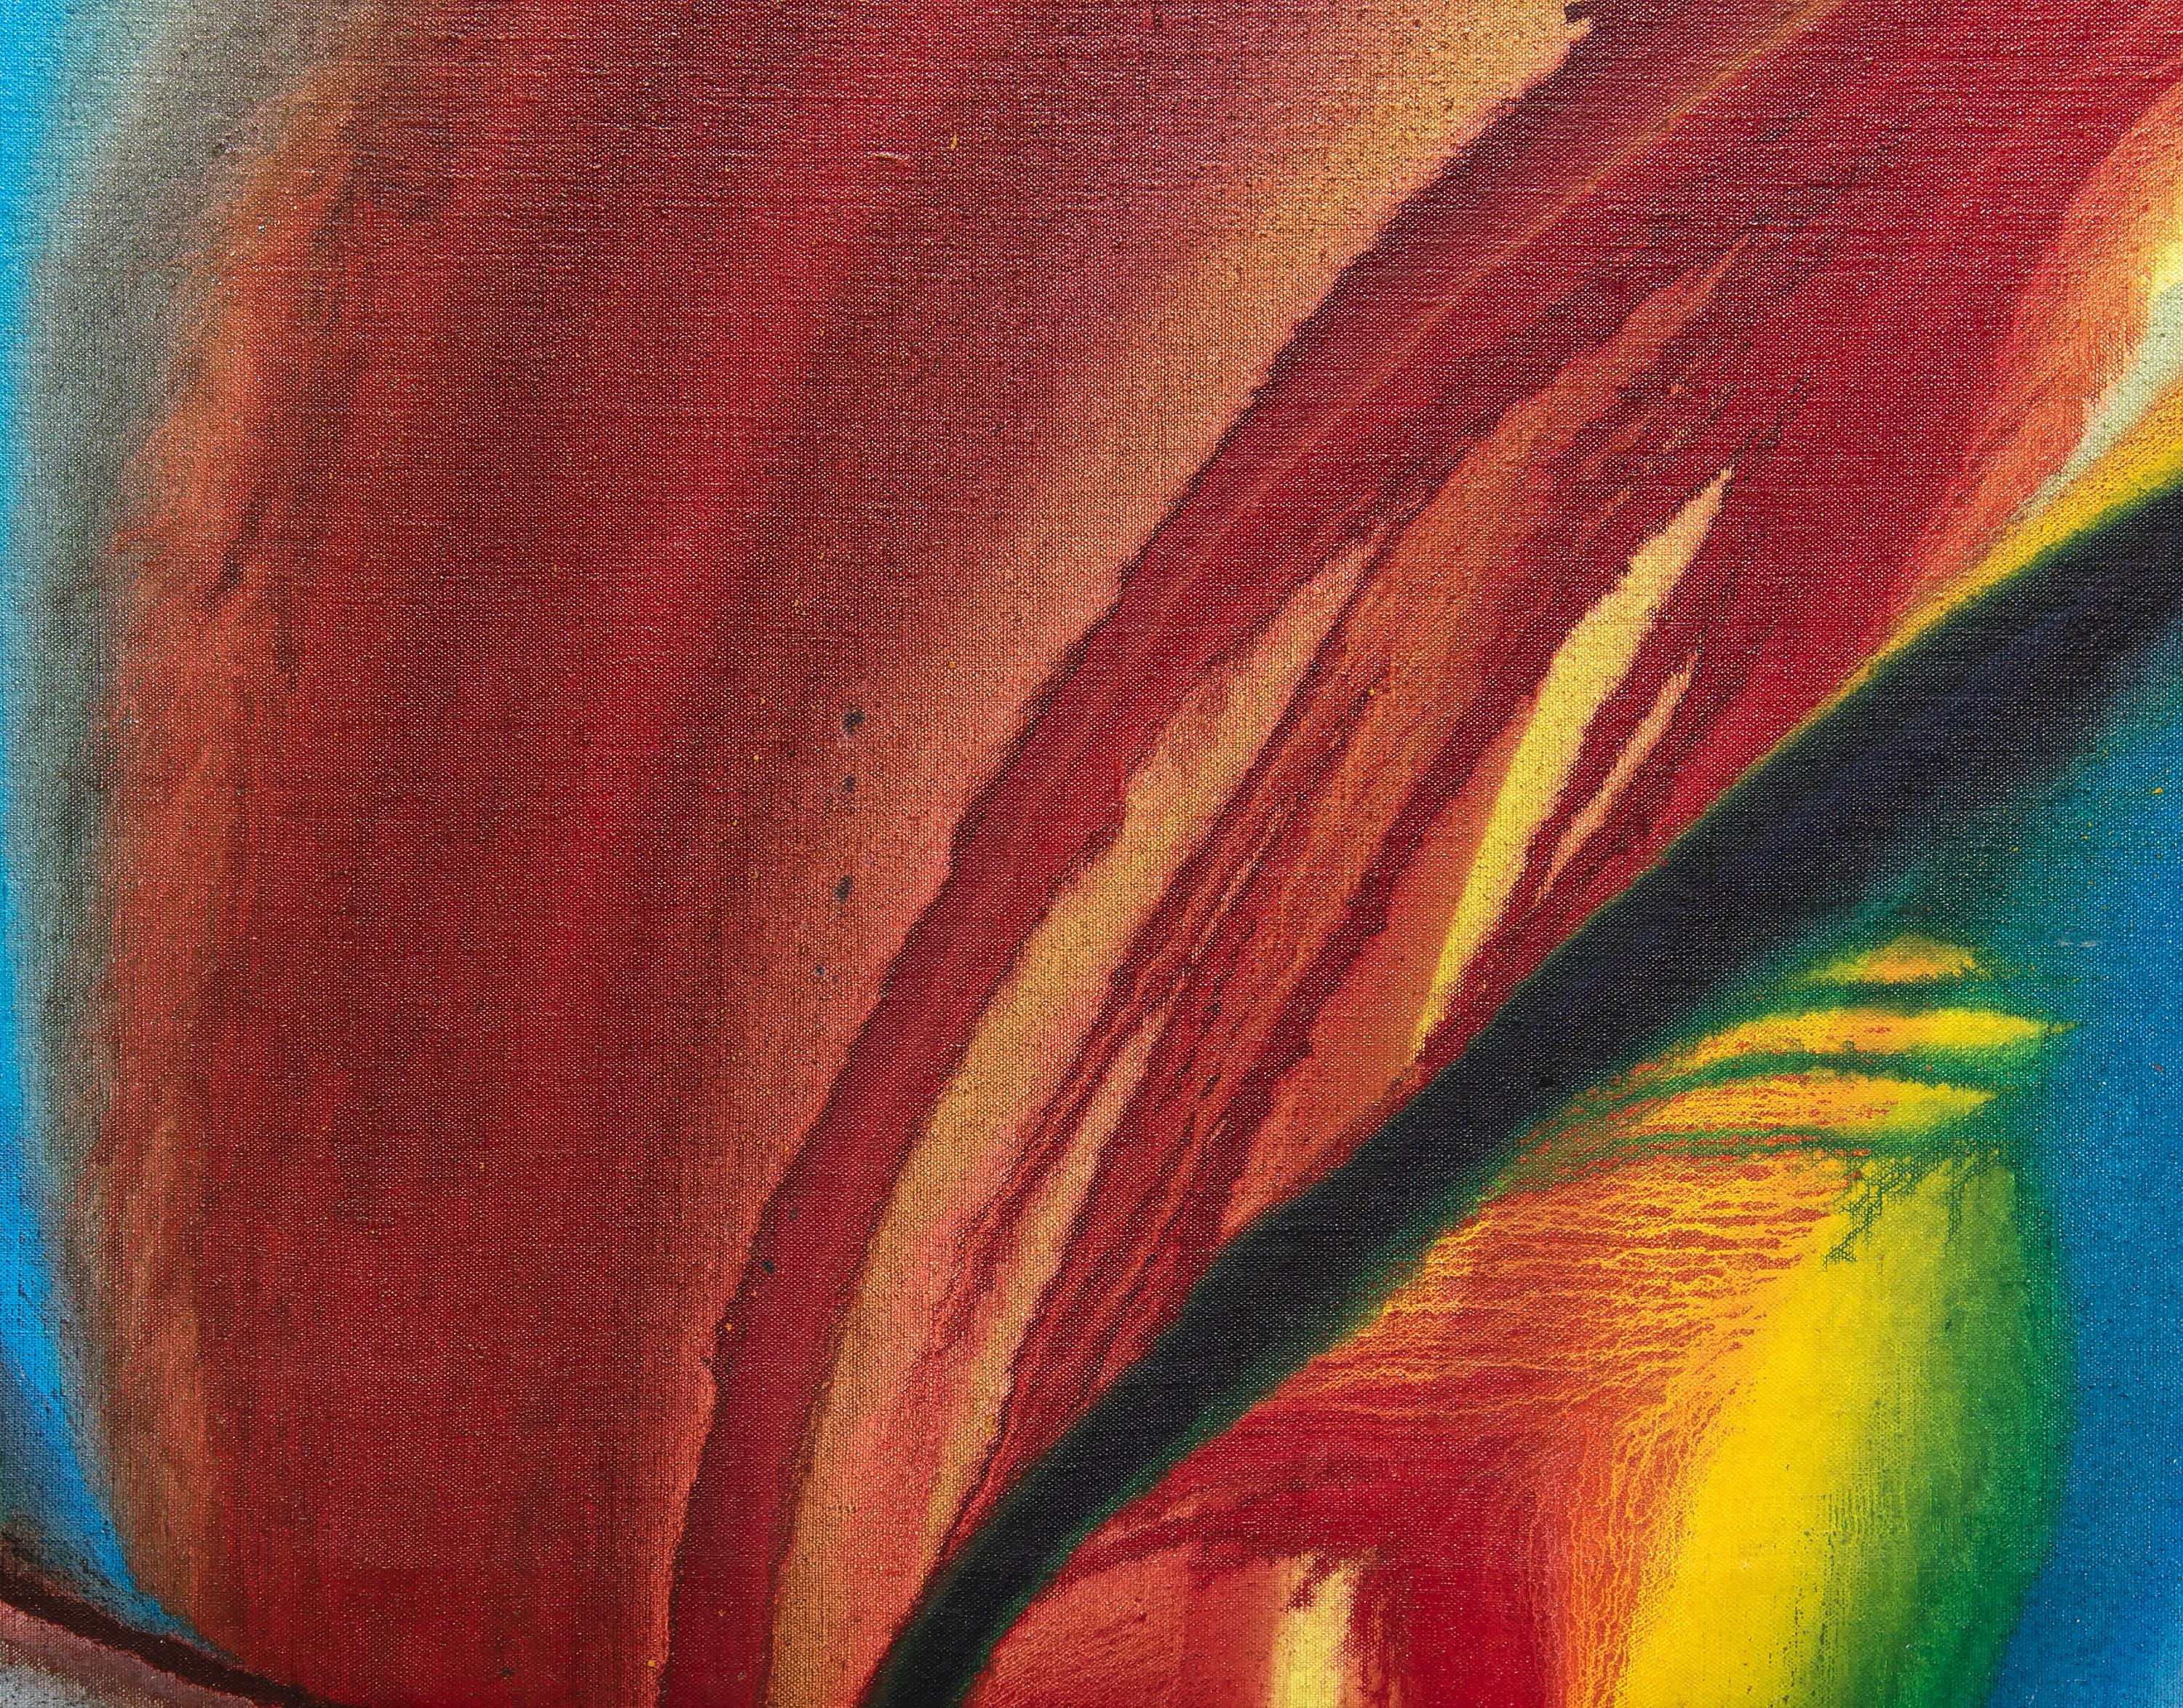 Ein Gemälde von Paul Jenkins. Dieses abstrakte Acrylbild ohne Titel auf Leinwand wurde von dem abstrakten Expressionisten Paul Jenkins in einer üppigen und leuchtenden Palette von Blau-, Rot-, Gelb- und Violetttönen gemalt. Signiert unten in der